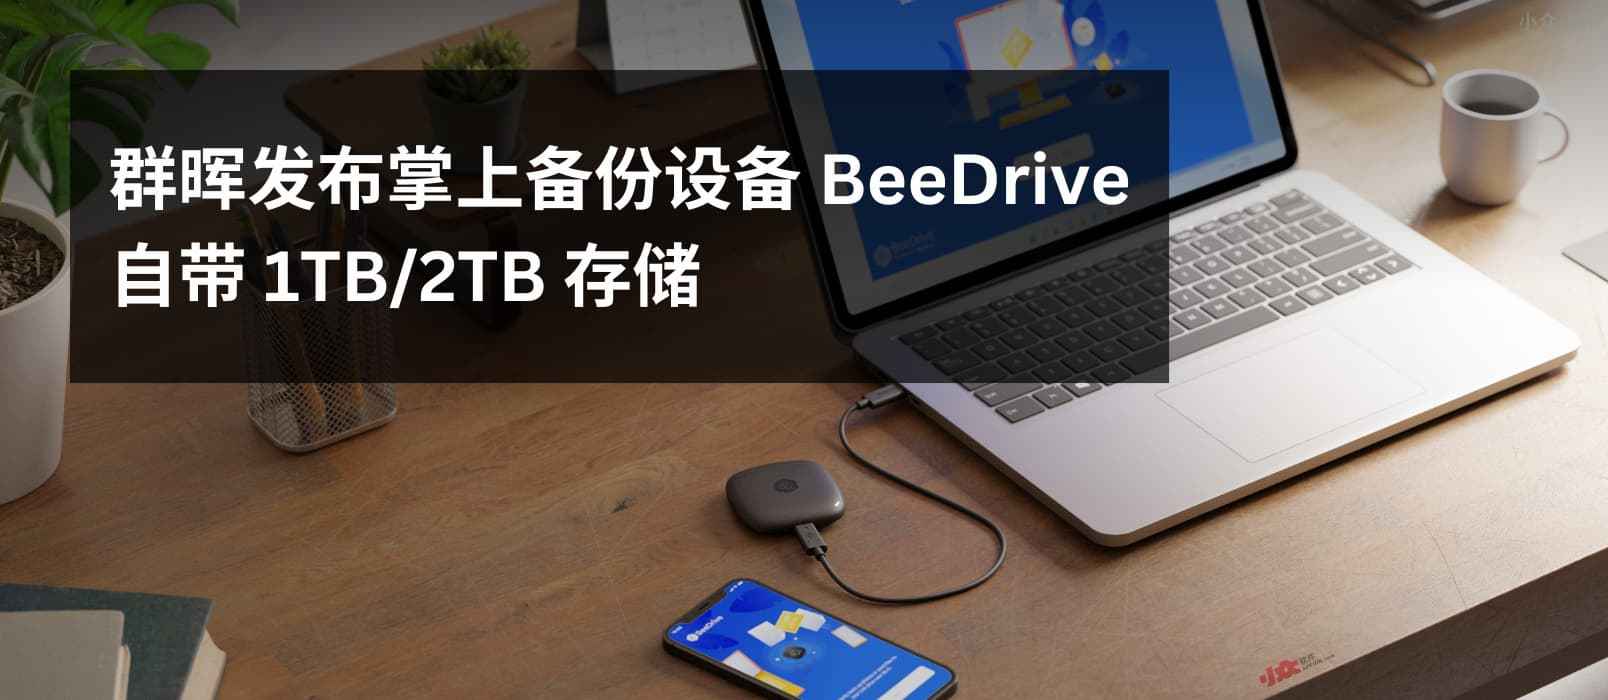 群晖发布掌上备份设备 BeeDrive，自带 1TB/2TB SSD